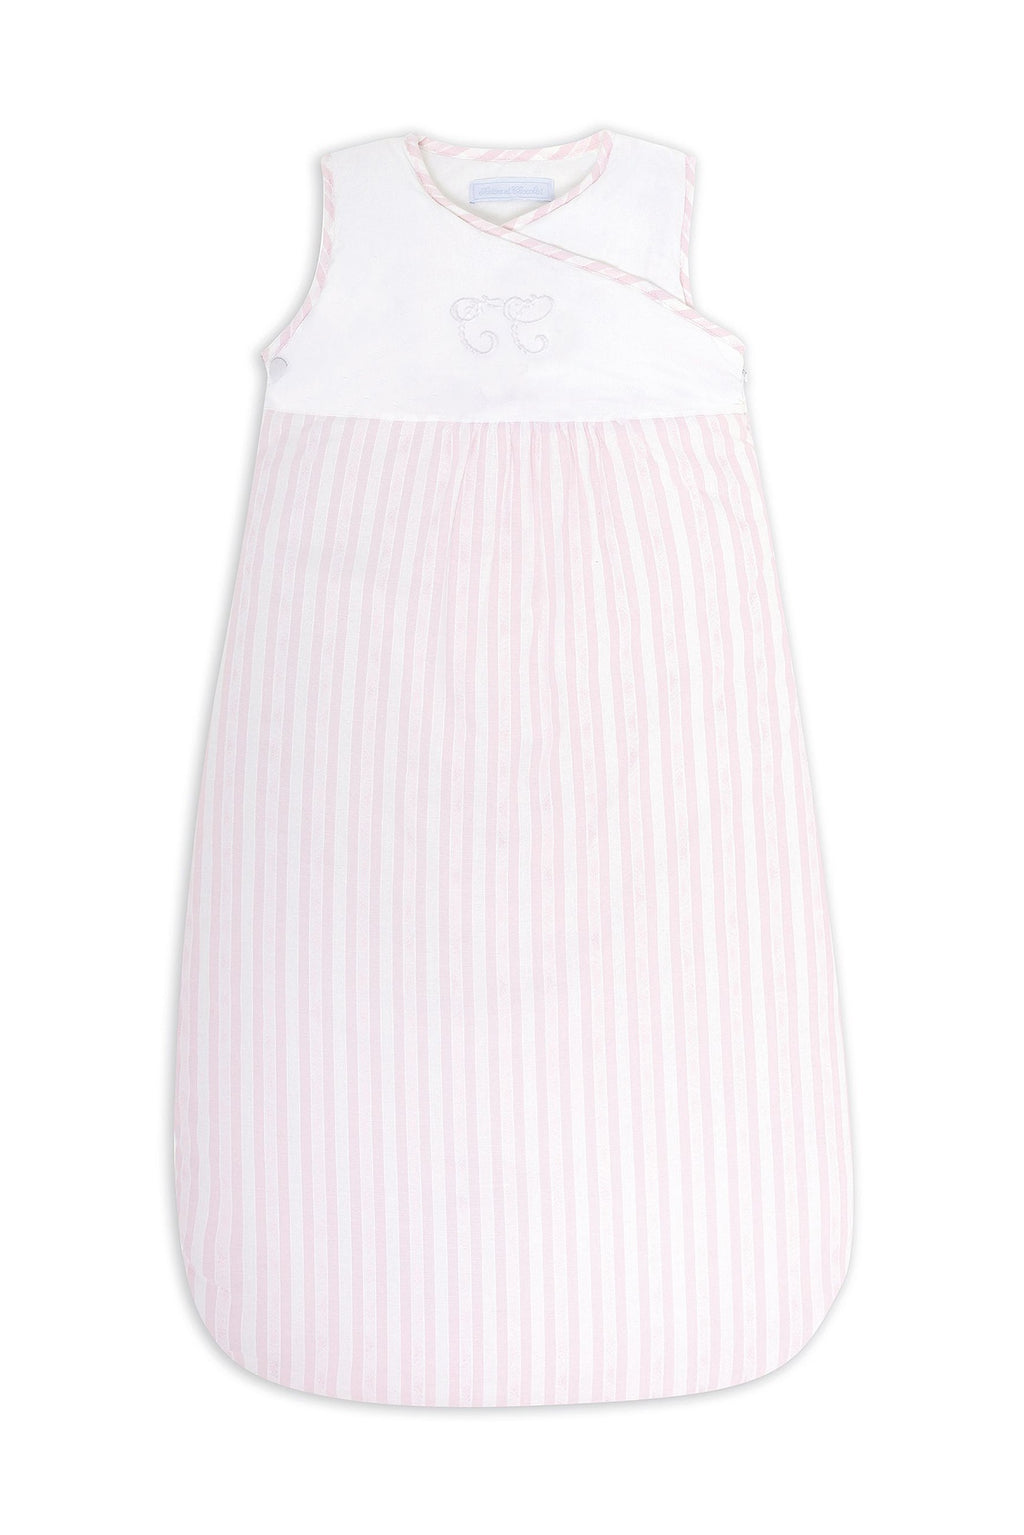 Sleeping bag - Garda Pale pink T2